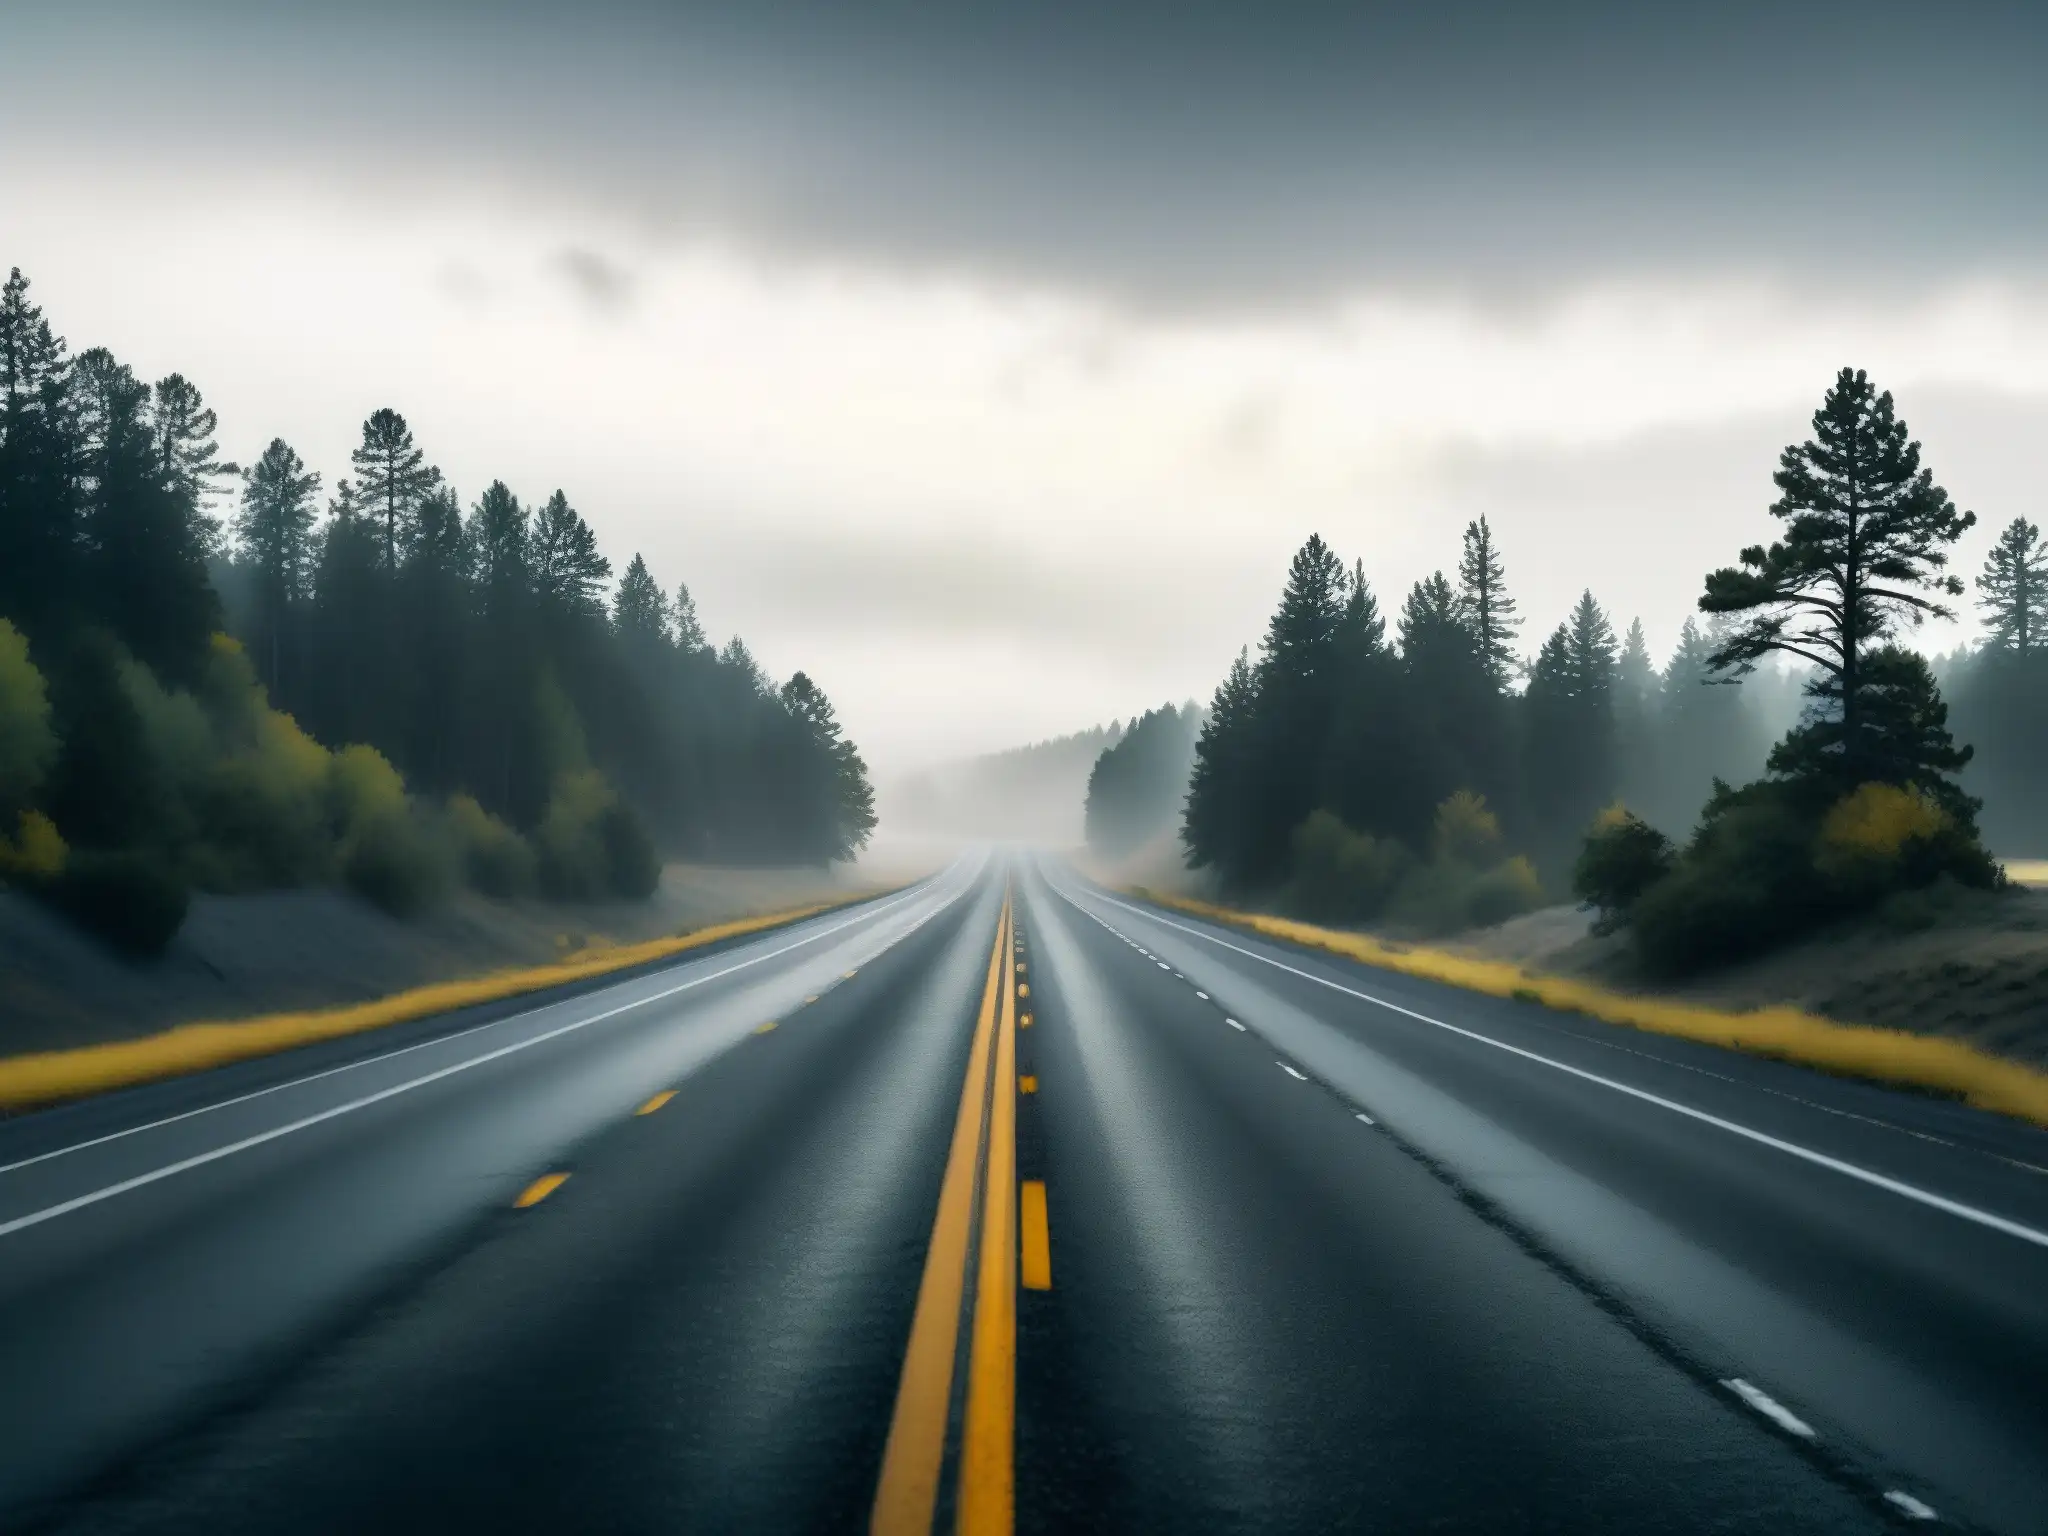 Carretera desolada en América con árboles retorcidos y niebla misteriosa, atmósfera de leyendas urbanas y carreteras malditas